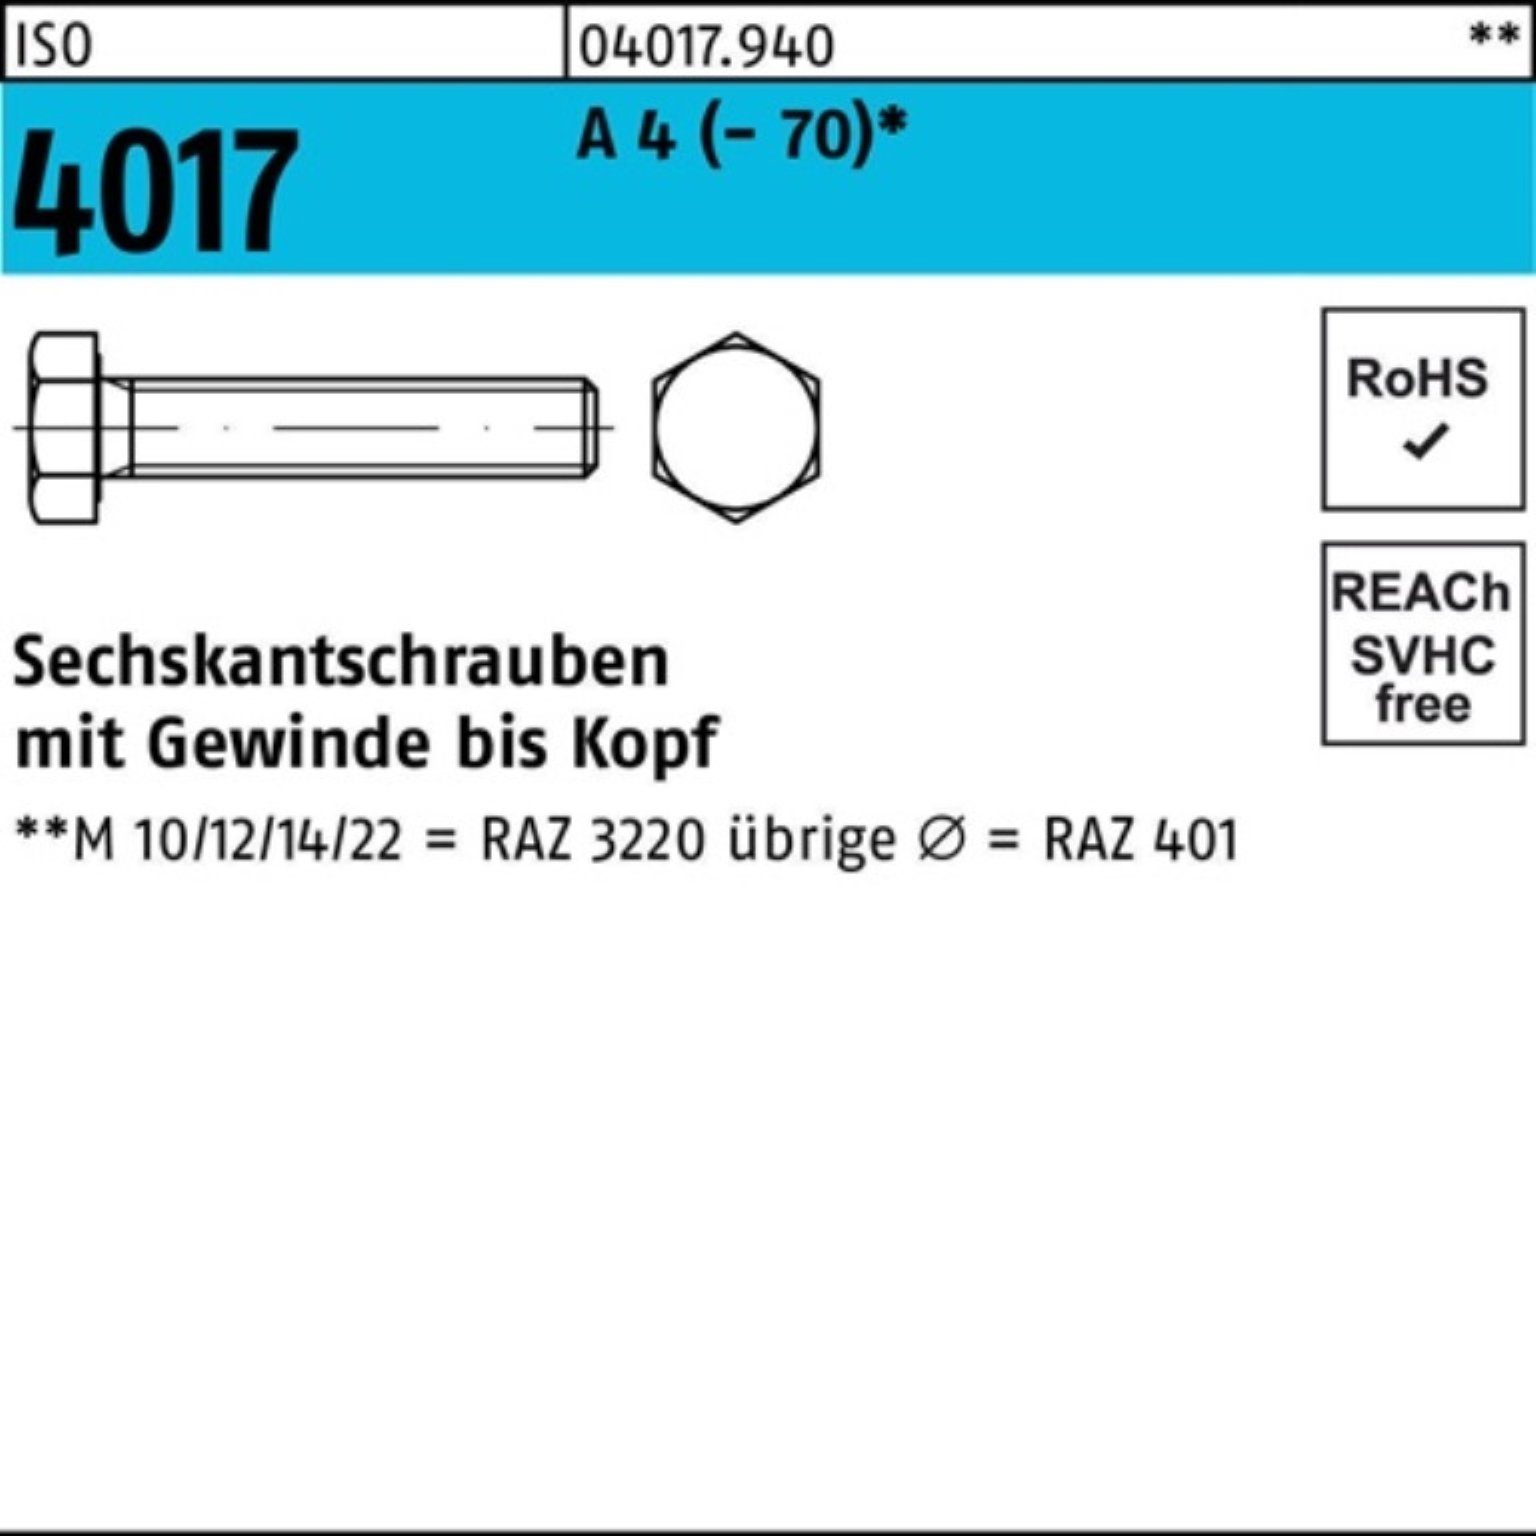 Bufab Sechskantschraube 100er Pack Sechskantschraube ISO 4017 VG M10x 20 A 4 (70) 100 Stück